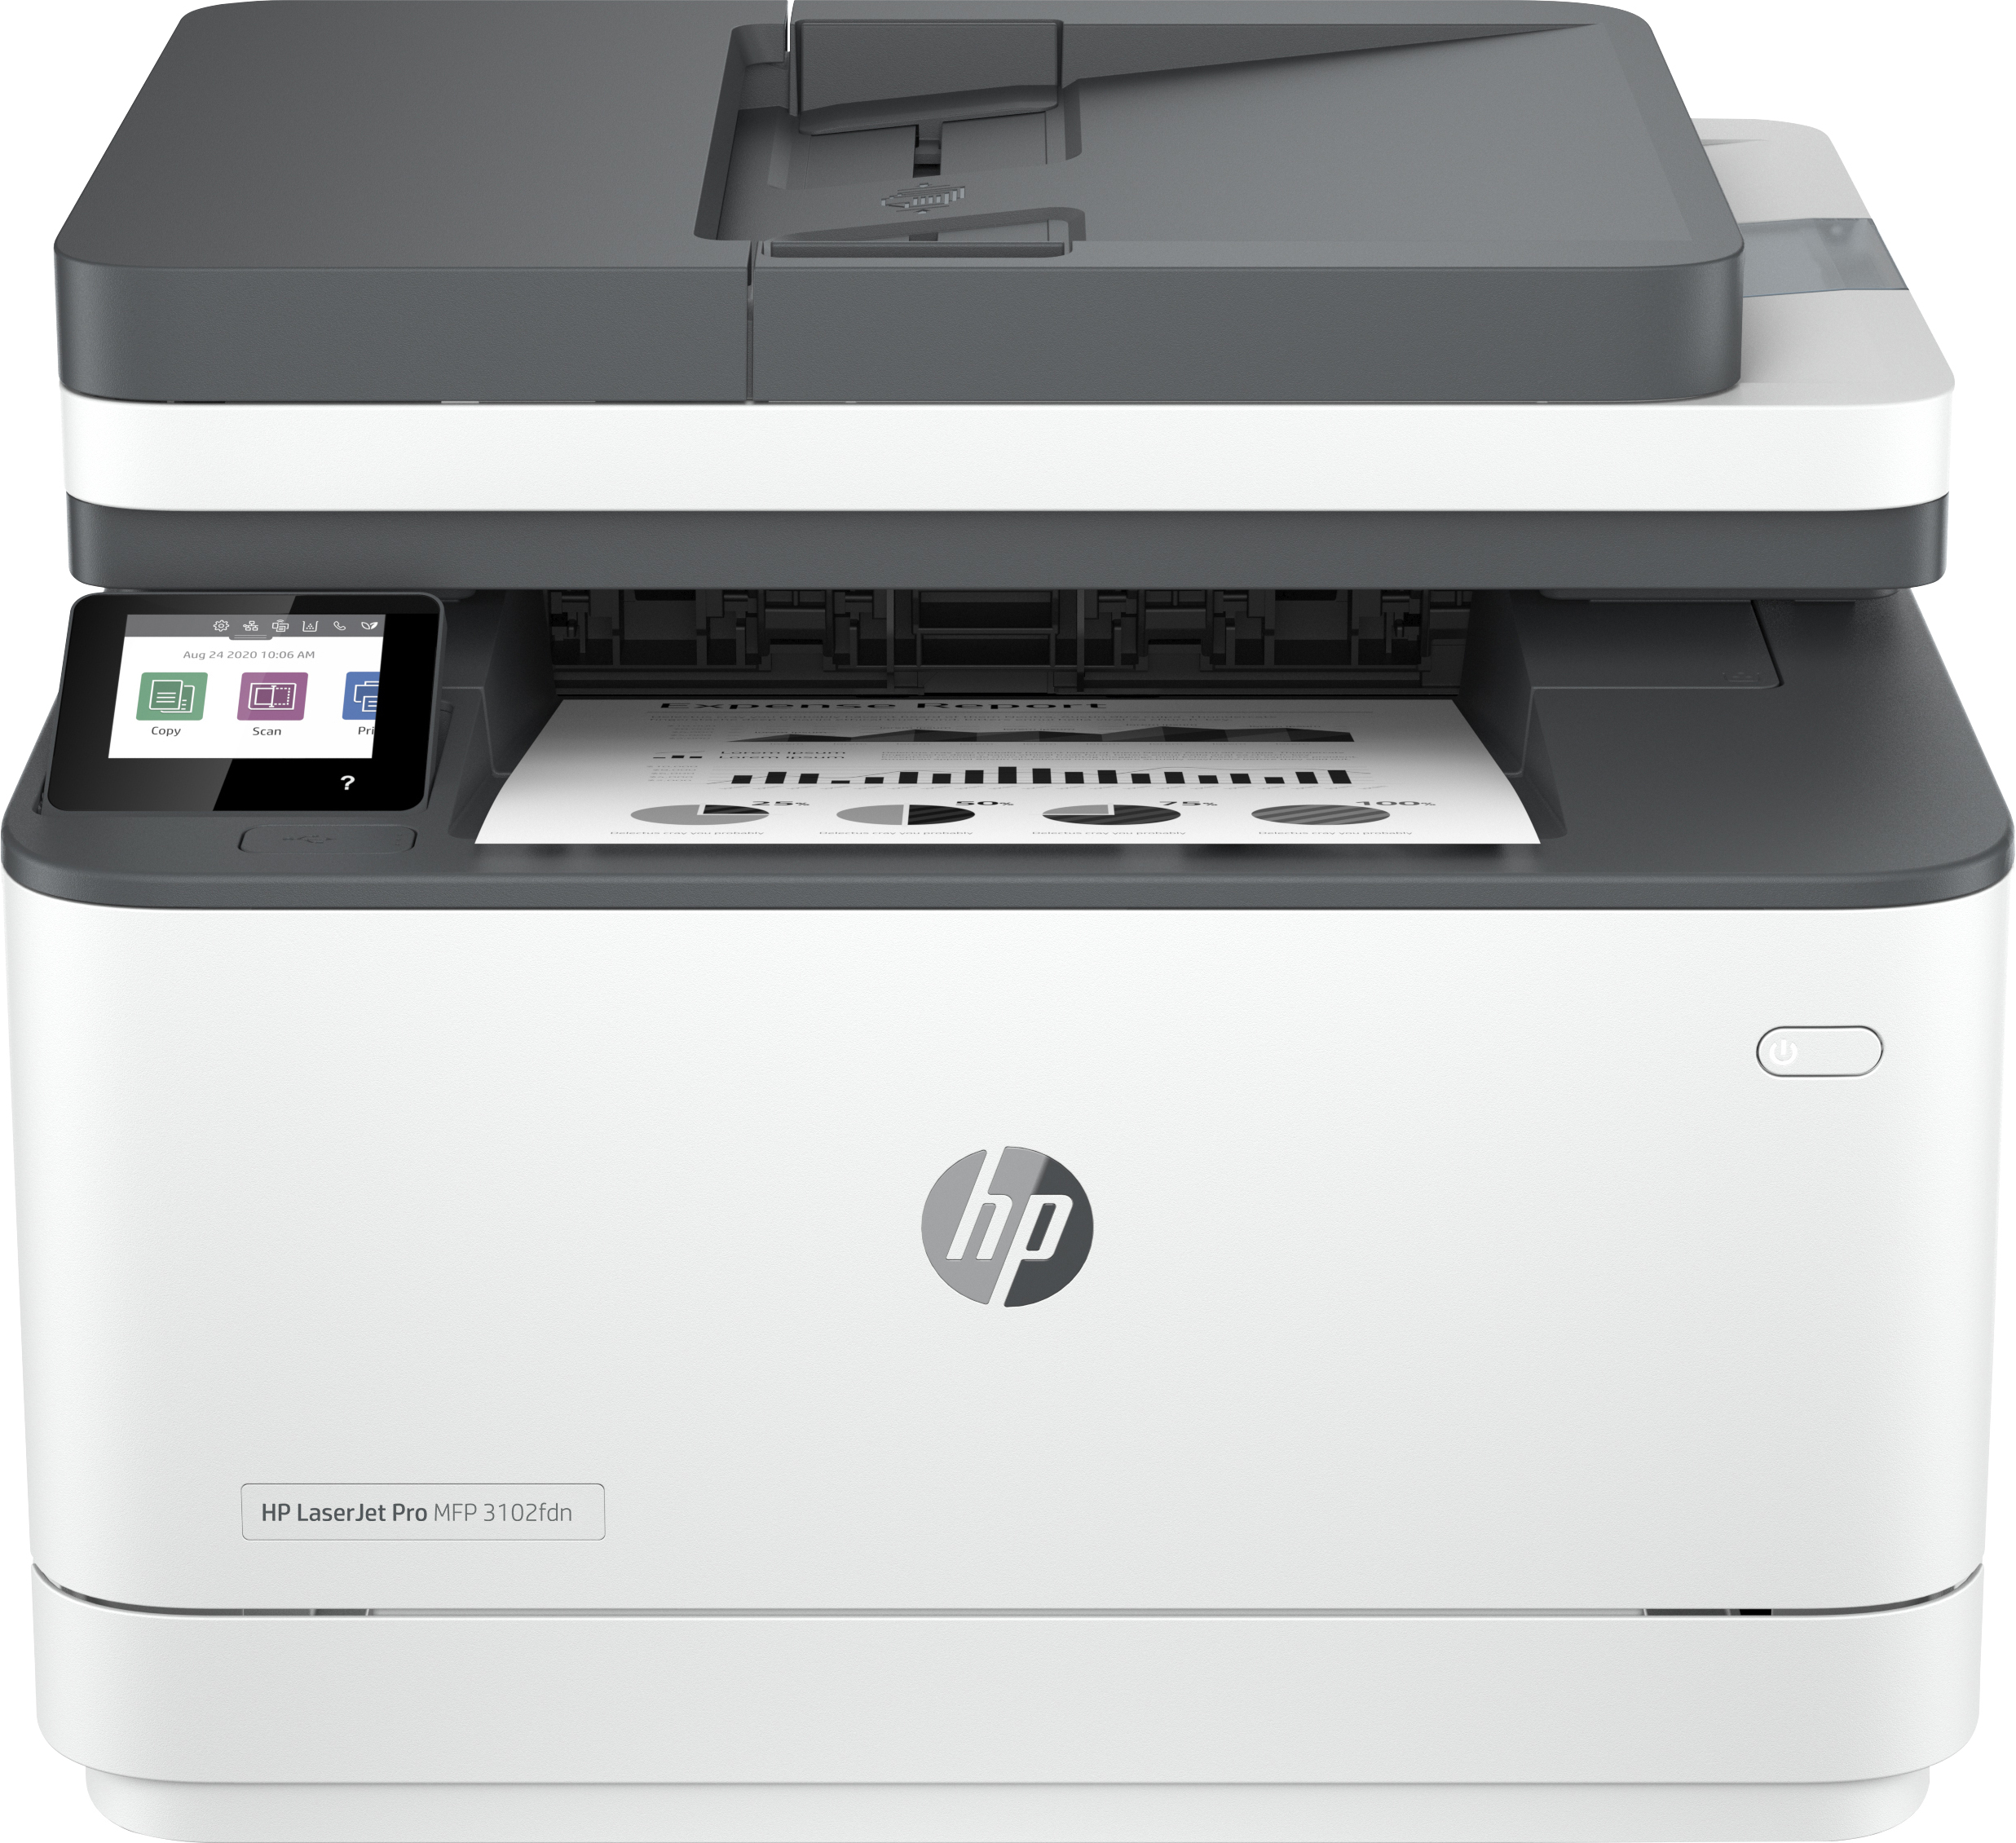 HP HP LaserJet Pro MFP 3102fdn printer, Zwart-wit, Printer voor Kleine en middelgrote ondernemingen, Printen, kopi&#235;ren, scannen, faxen, Automatische documentinvoer; Dubbelzijdig printen; USB flash drive-poort aan de voorzijde; Touchscreen